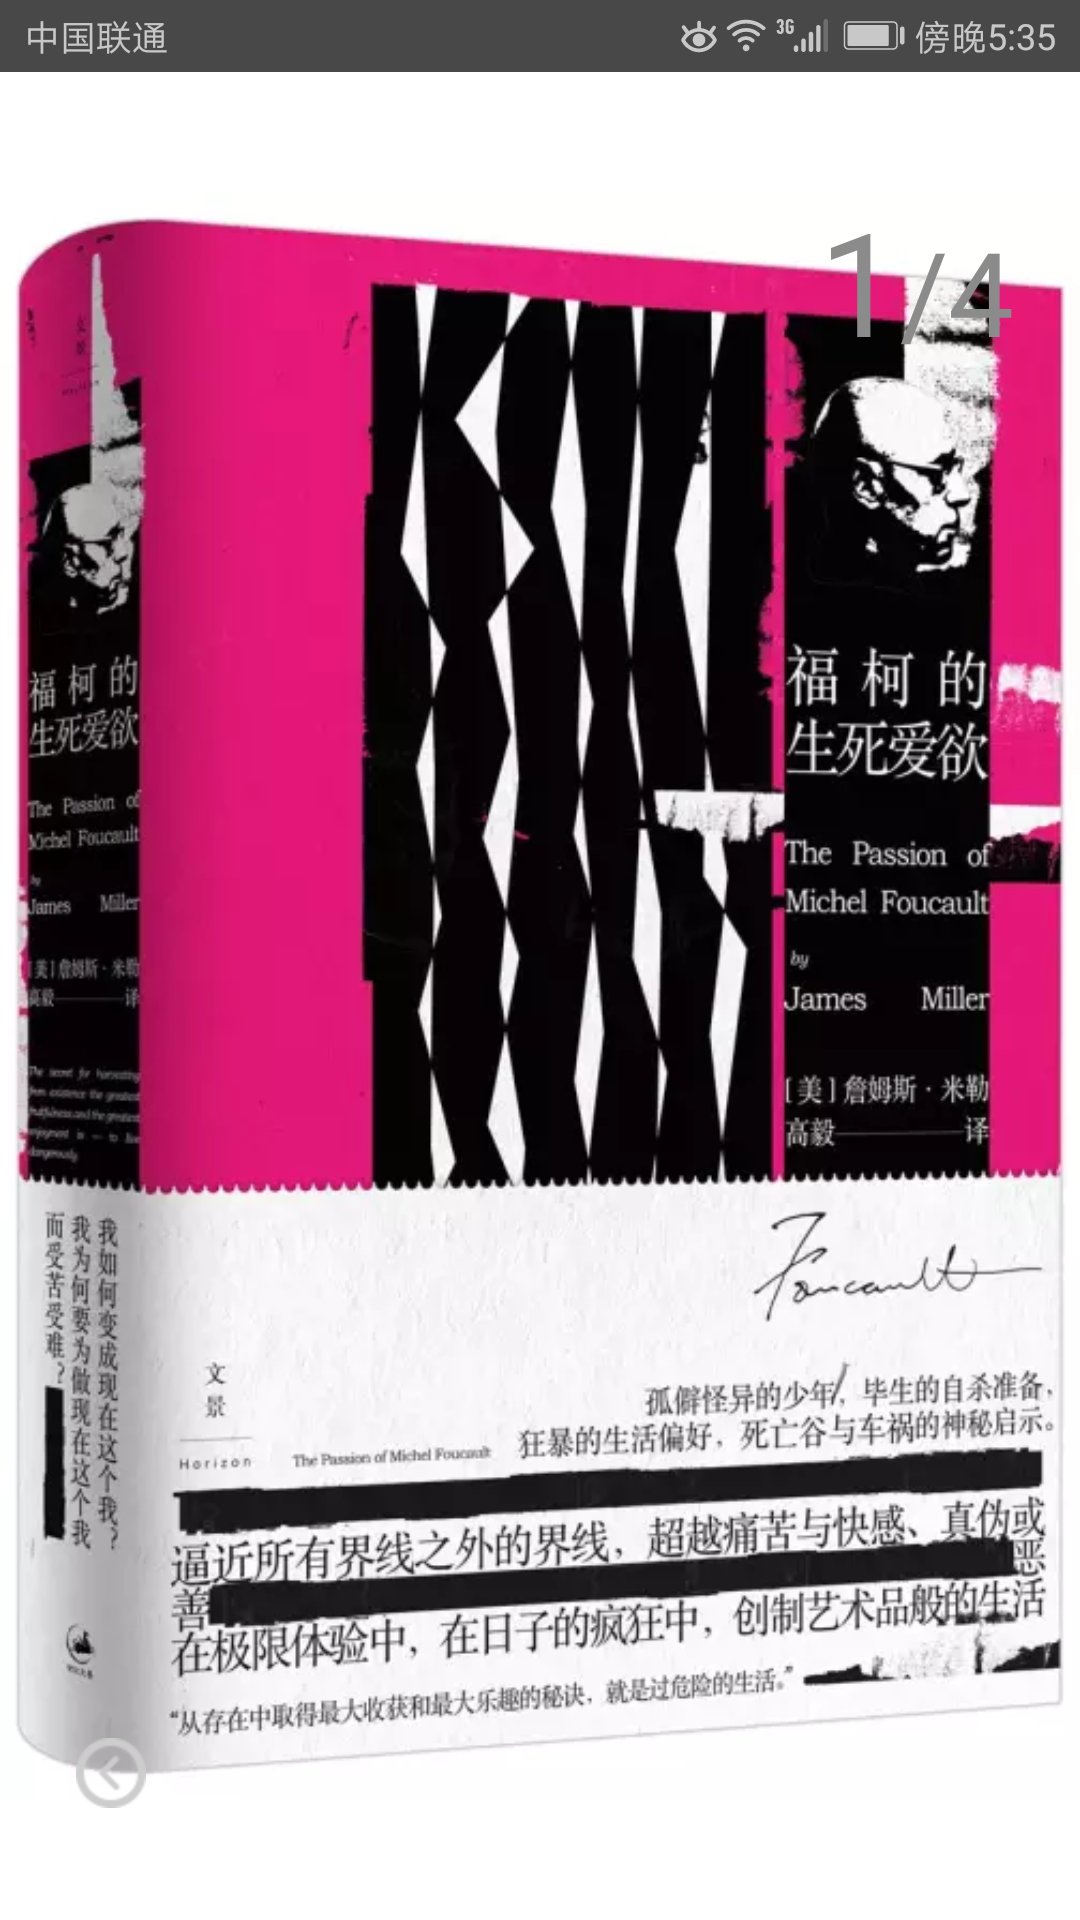 上海人民出版社推出的詹姆斯米勒作品，精装16开，书脊锁线纸质优良，排版印刷得体大方，活动期间价格实惠，送货速度也很快，非常满意。